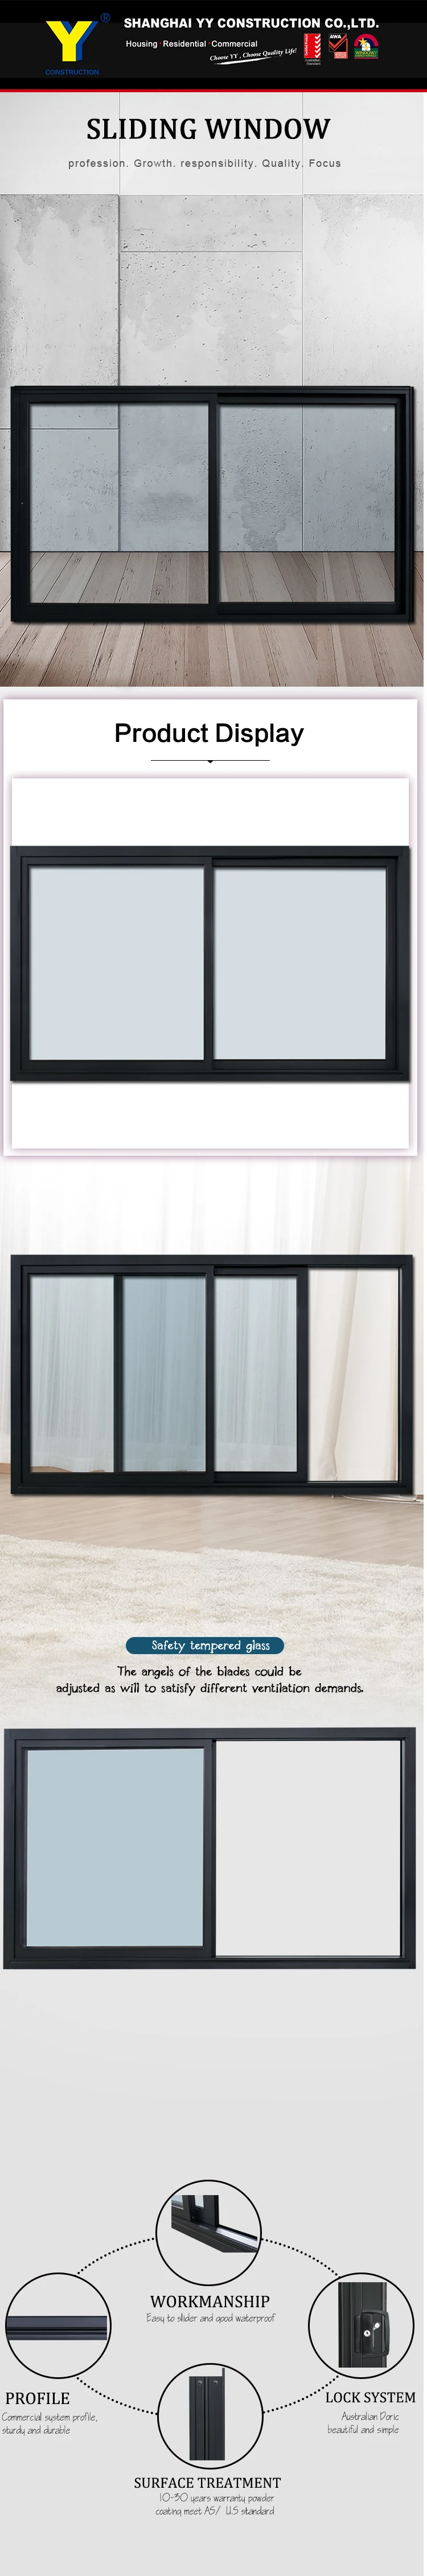 China Manufacturer Used Aluminium WIndows/Factory Aluminium Sliding Window and Door